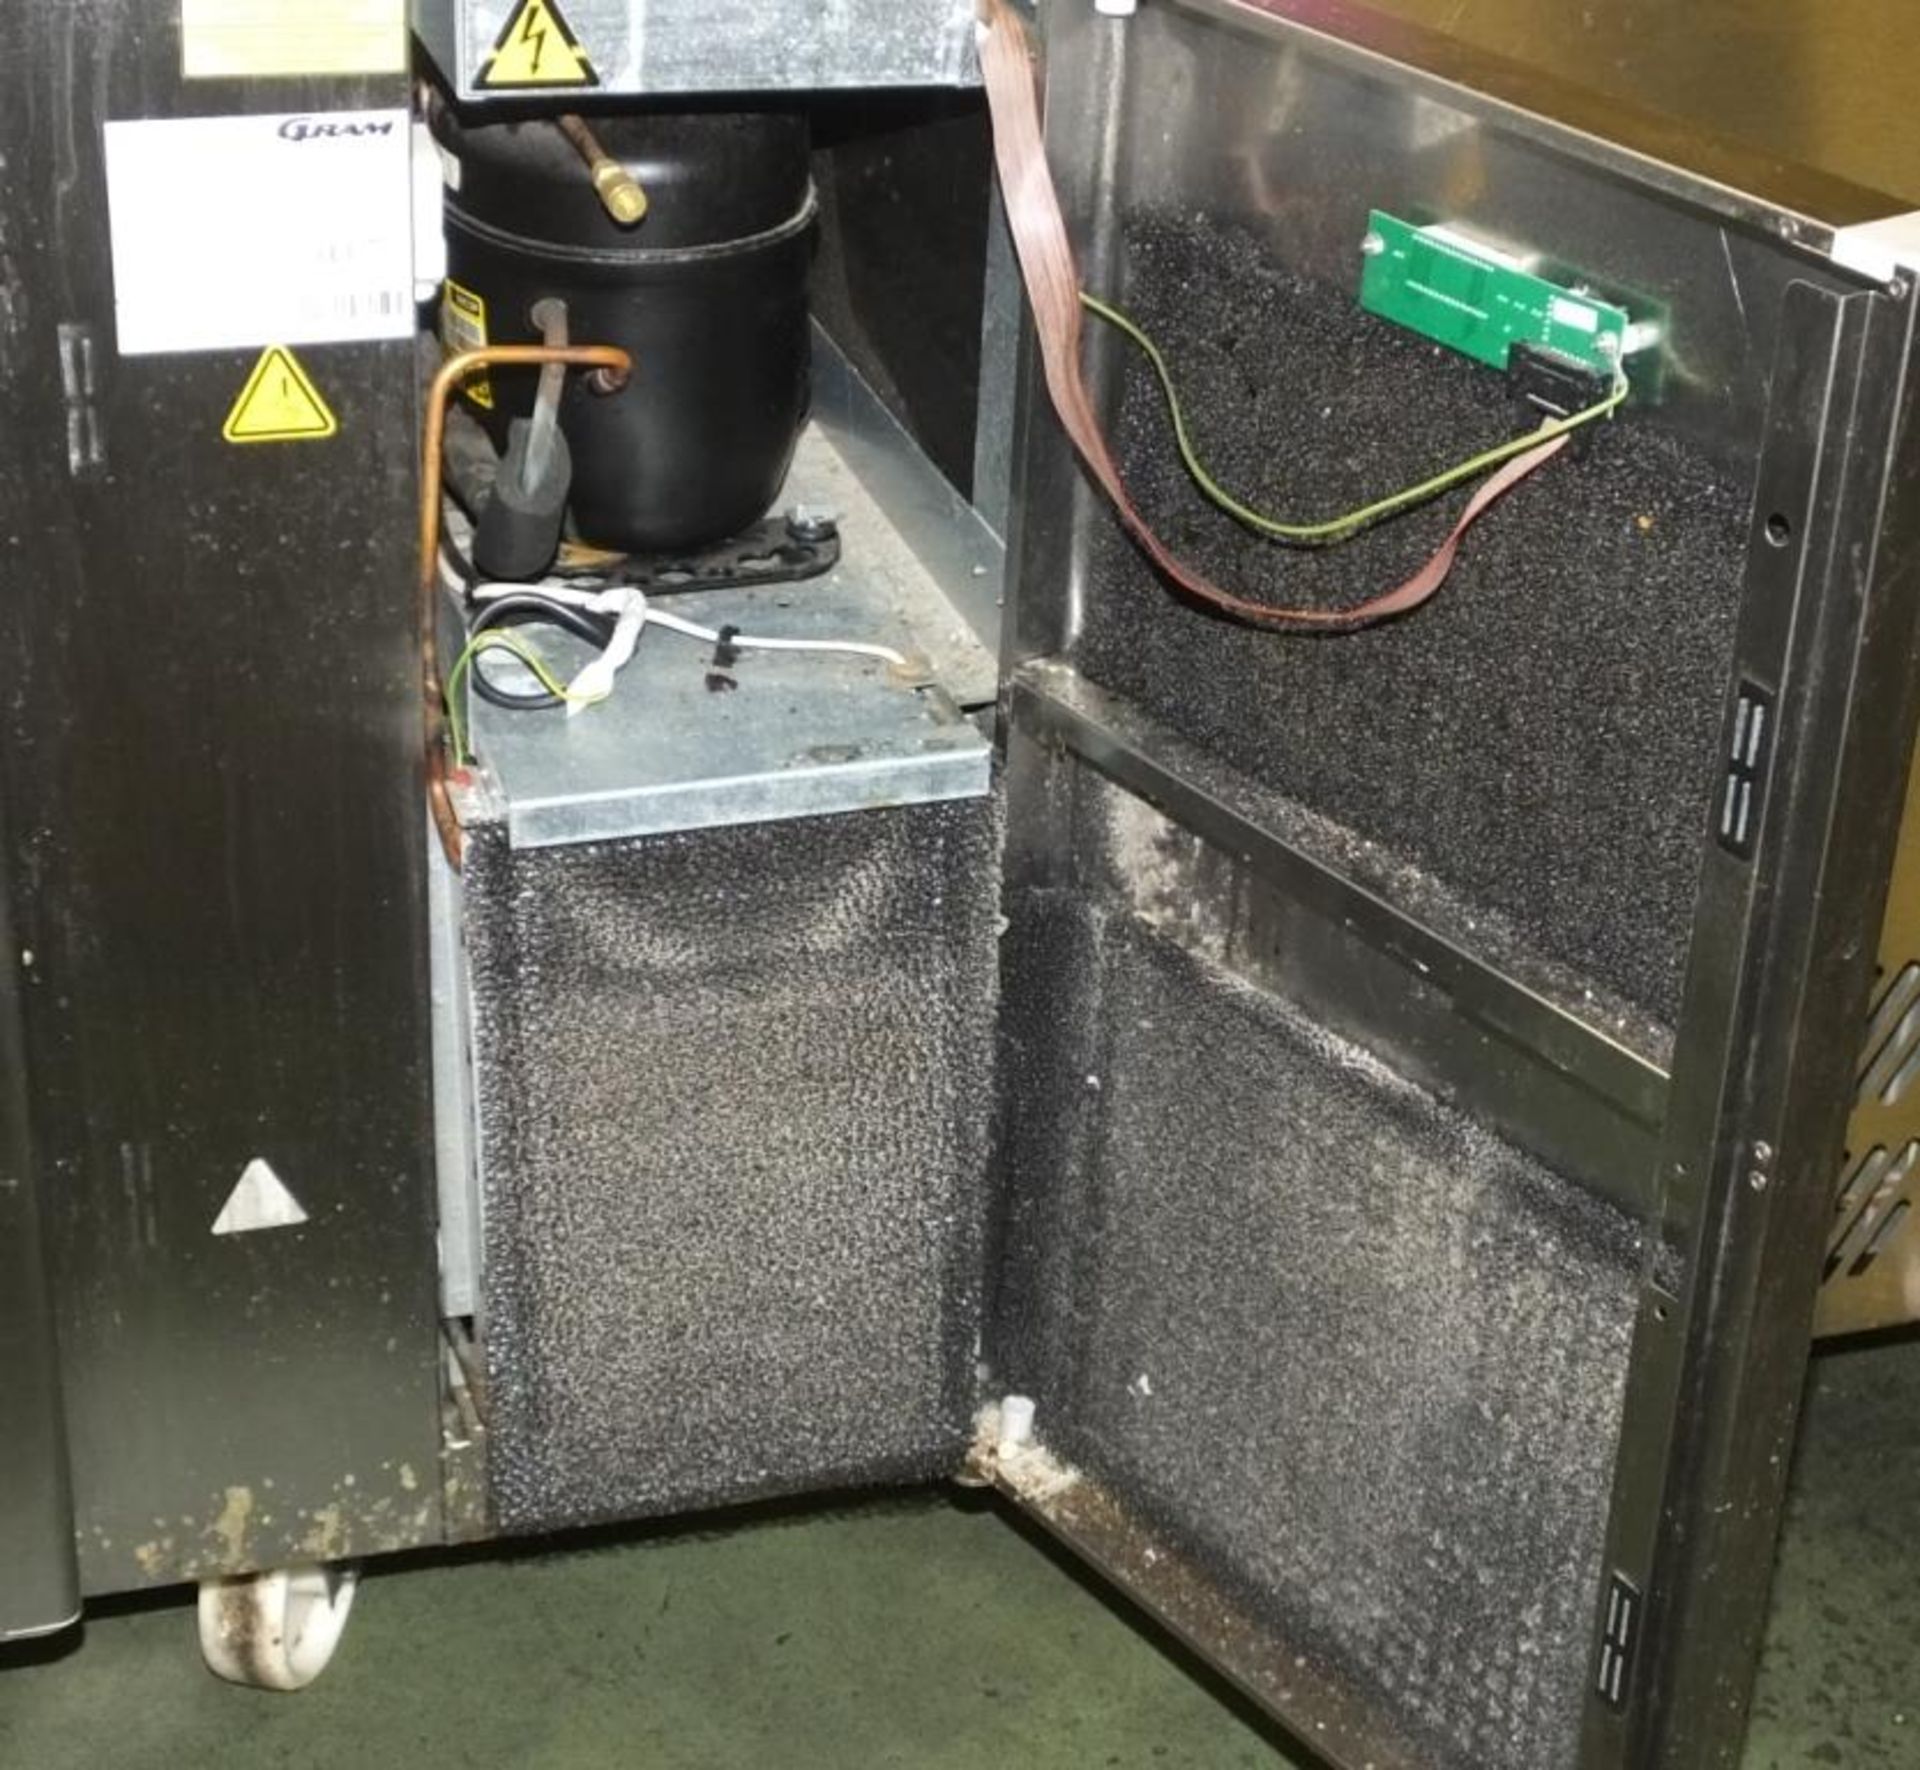 GRAM K 1807 CSH S5L Dl/Dl Refrigerated Preparation/Serving Unit. - Image 3 of 4